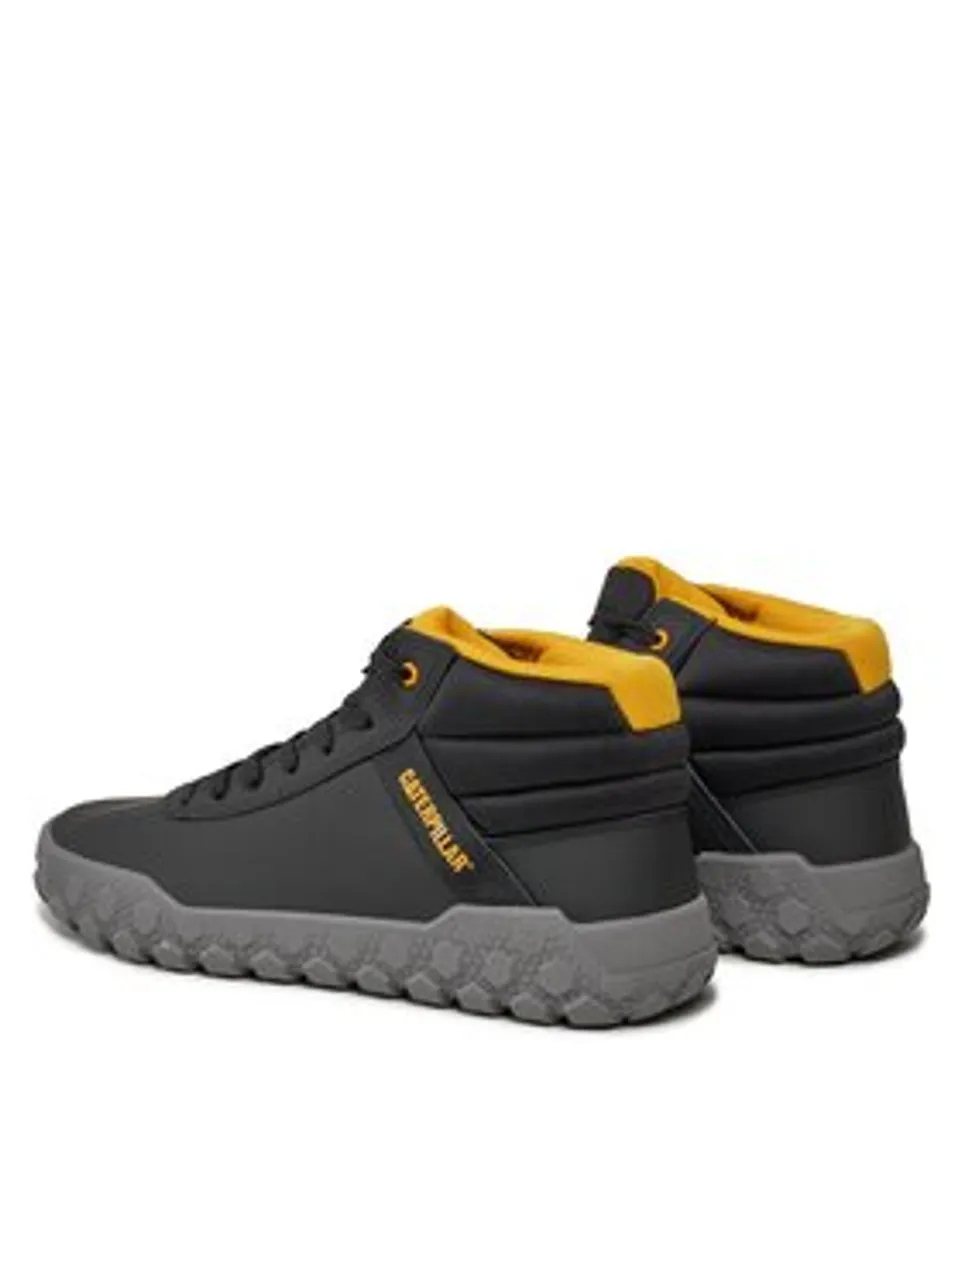 CATerpillar Sneakers Hex + P111350 Schwarz